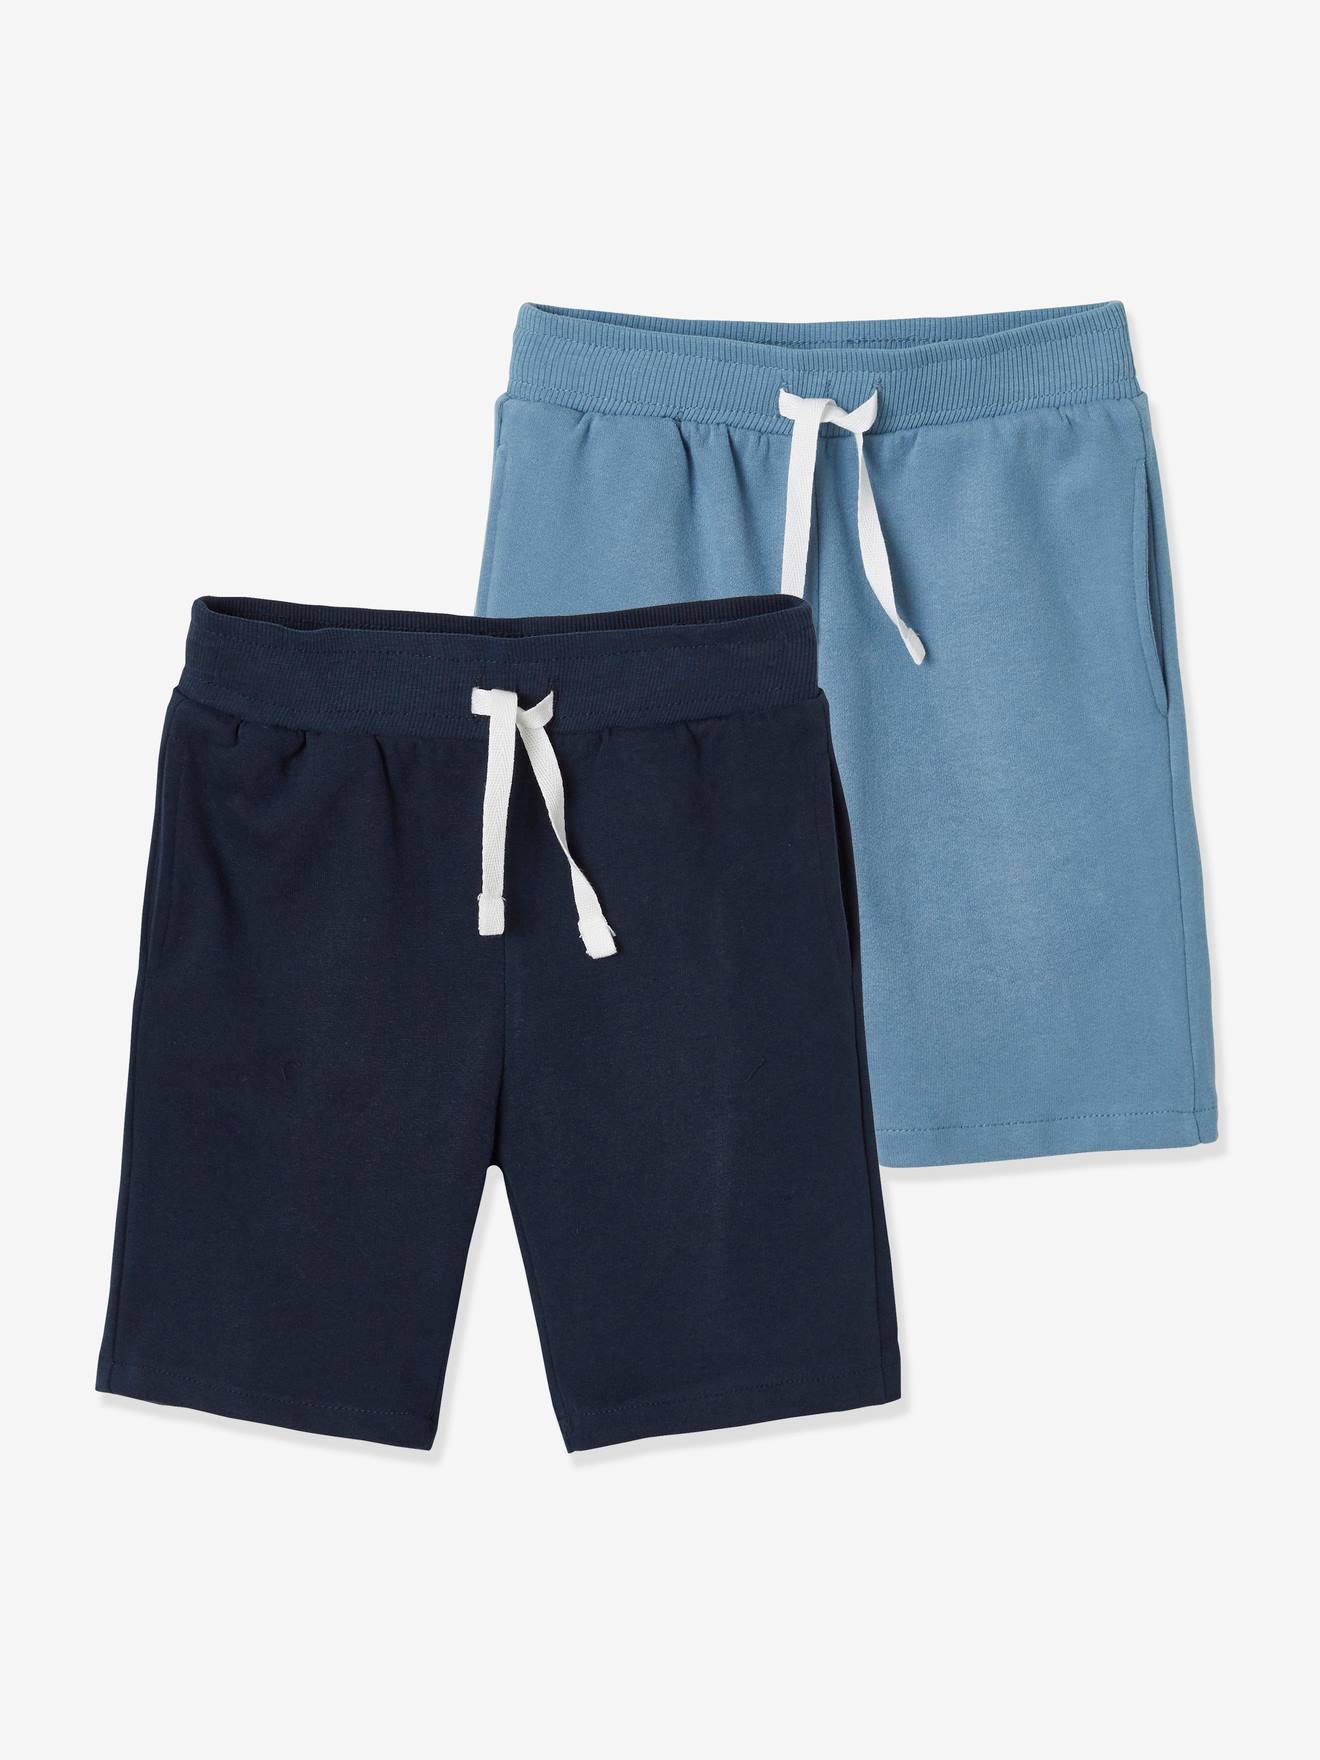 Shorts & Bermudas für Jungen - jetzt online kaufen! - vertbaudet